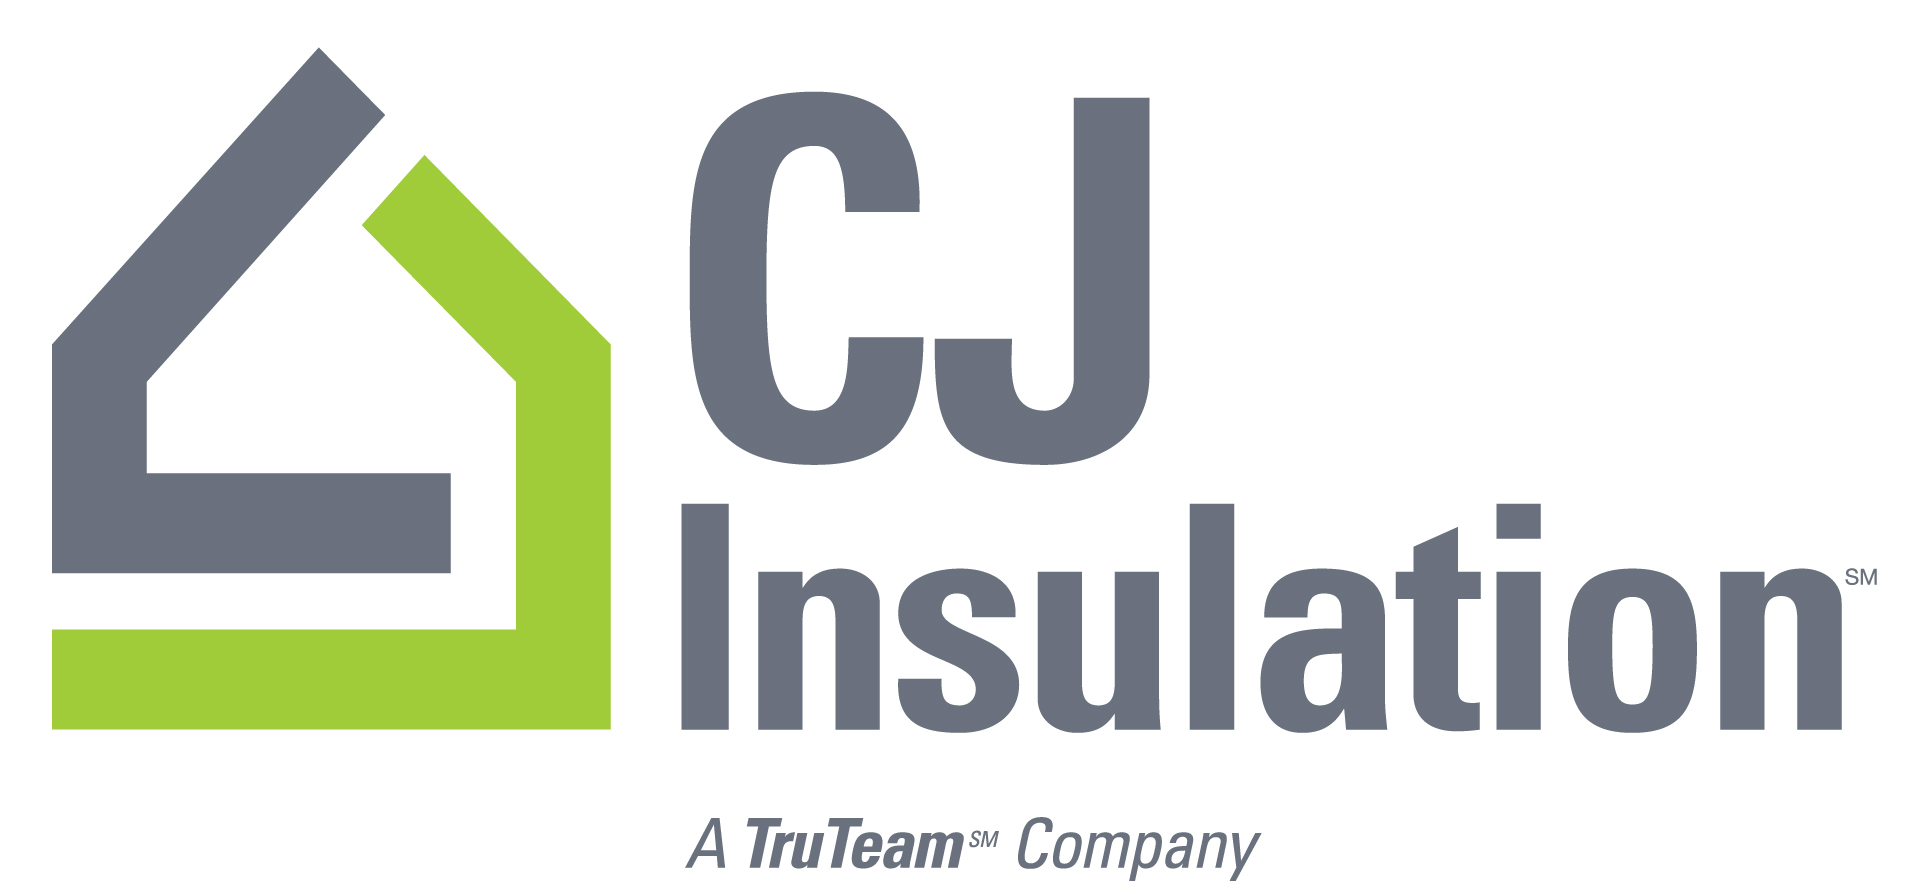 CJ Insulation